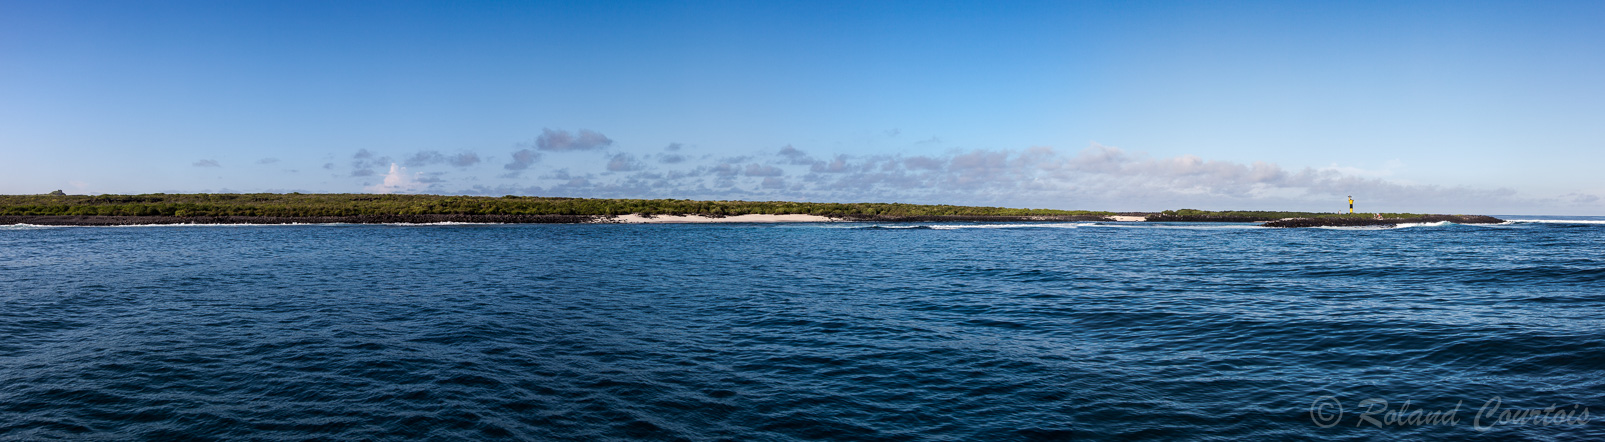 Première vue panoramique sur Punta Suarez de l'île d'Española.